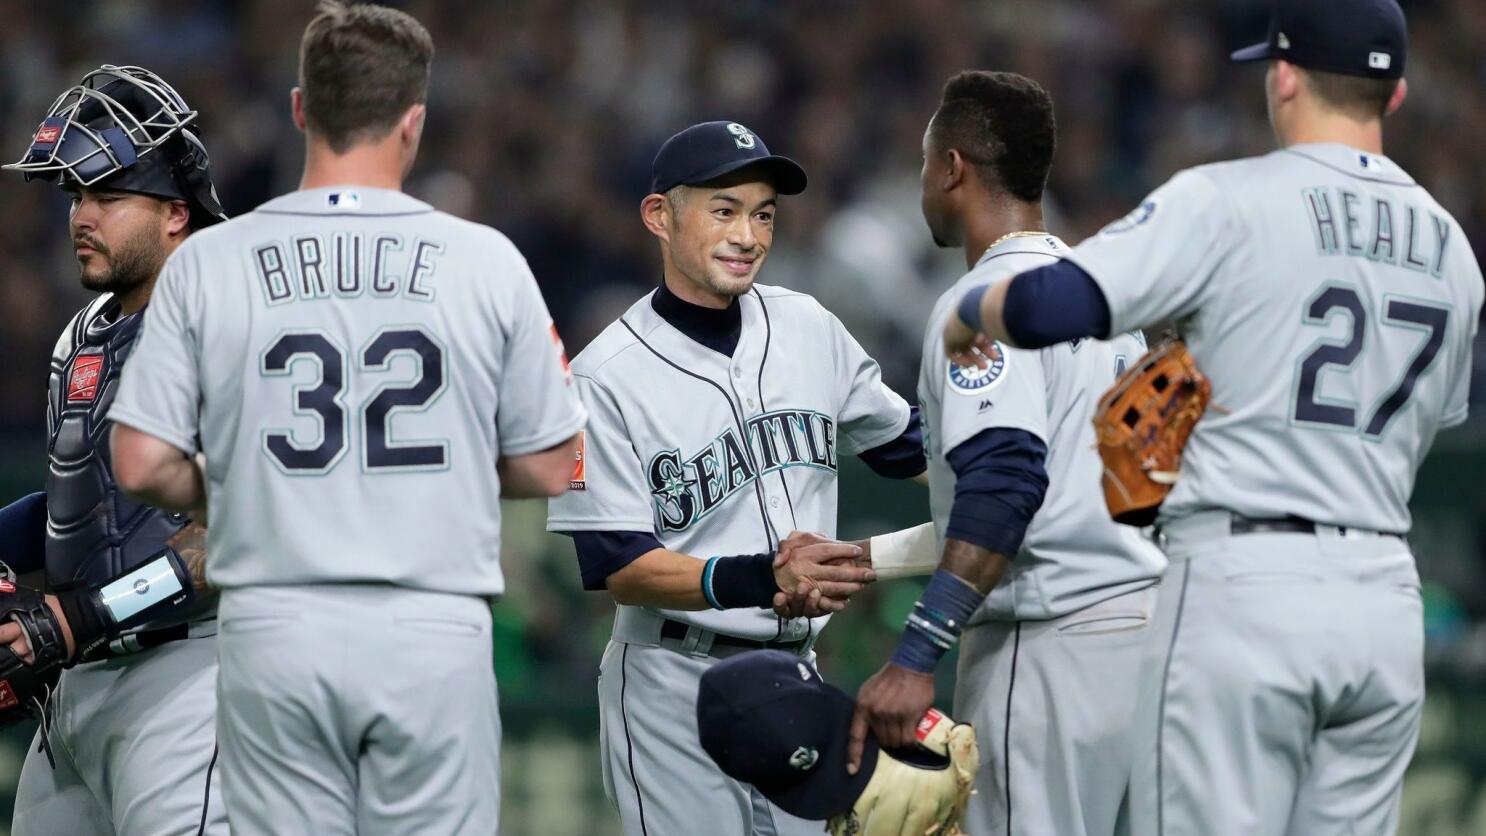 Ichiro Suzuki (Baseball Star) - On This Day